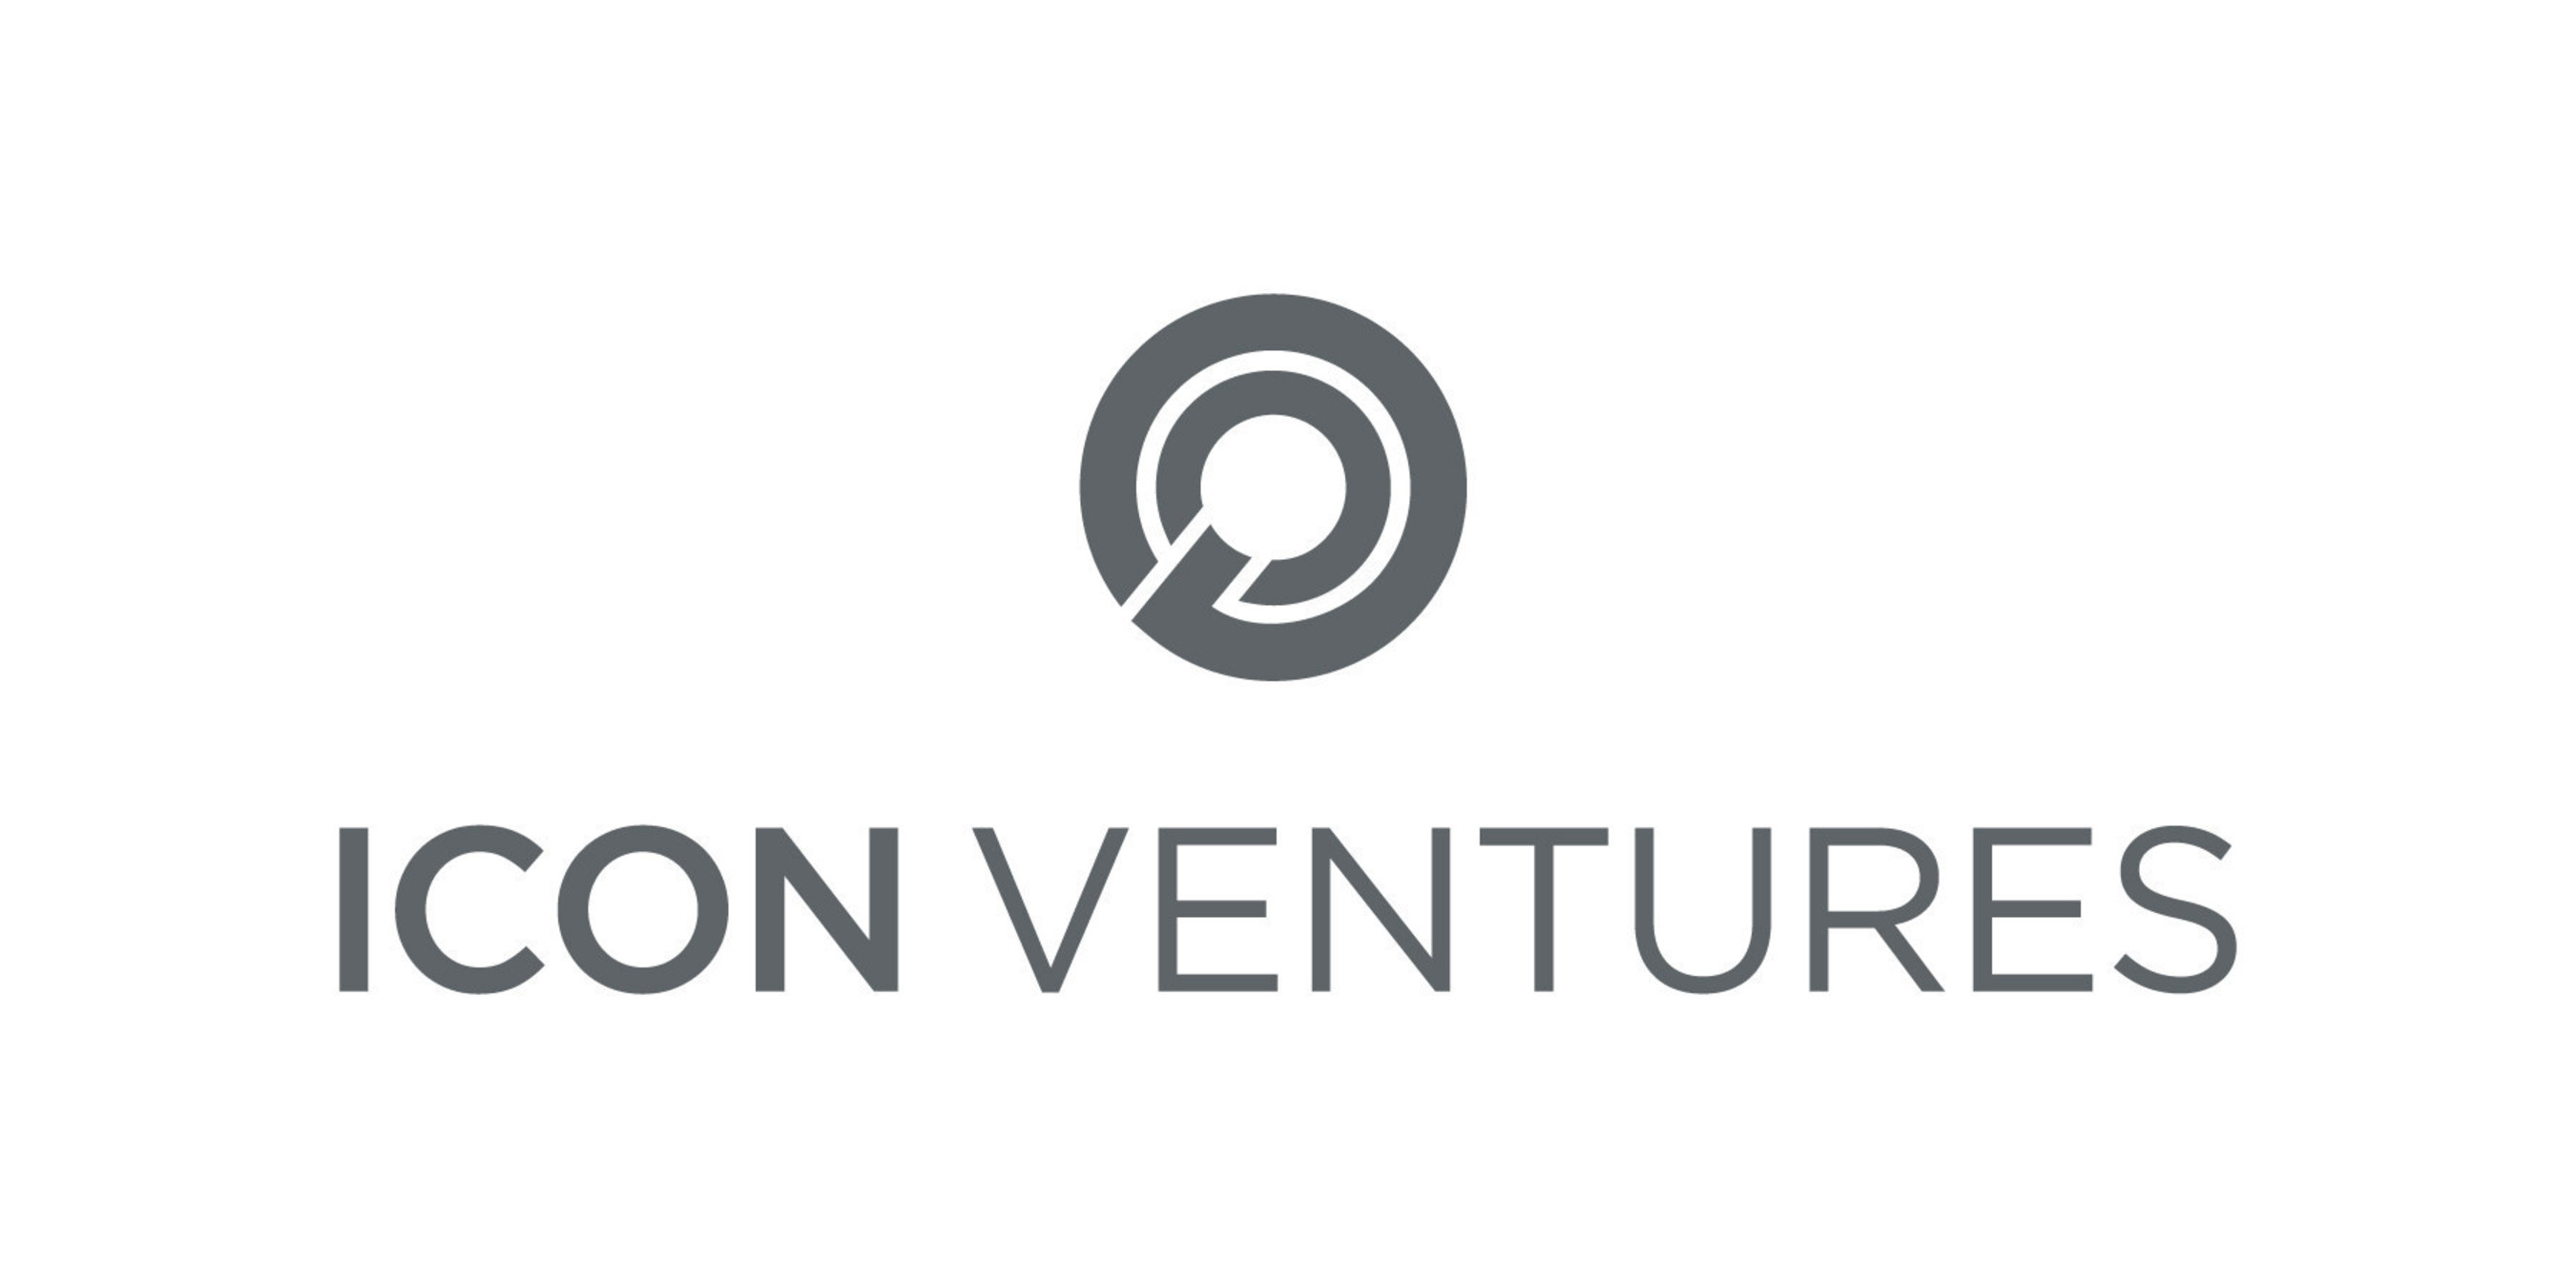 New Icon Ventures Logo